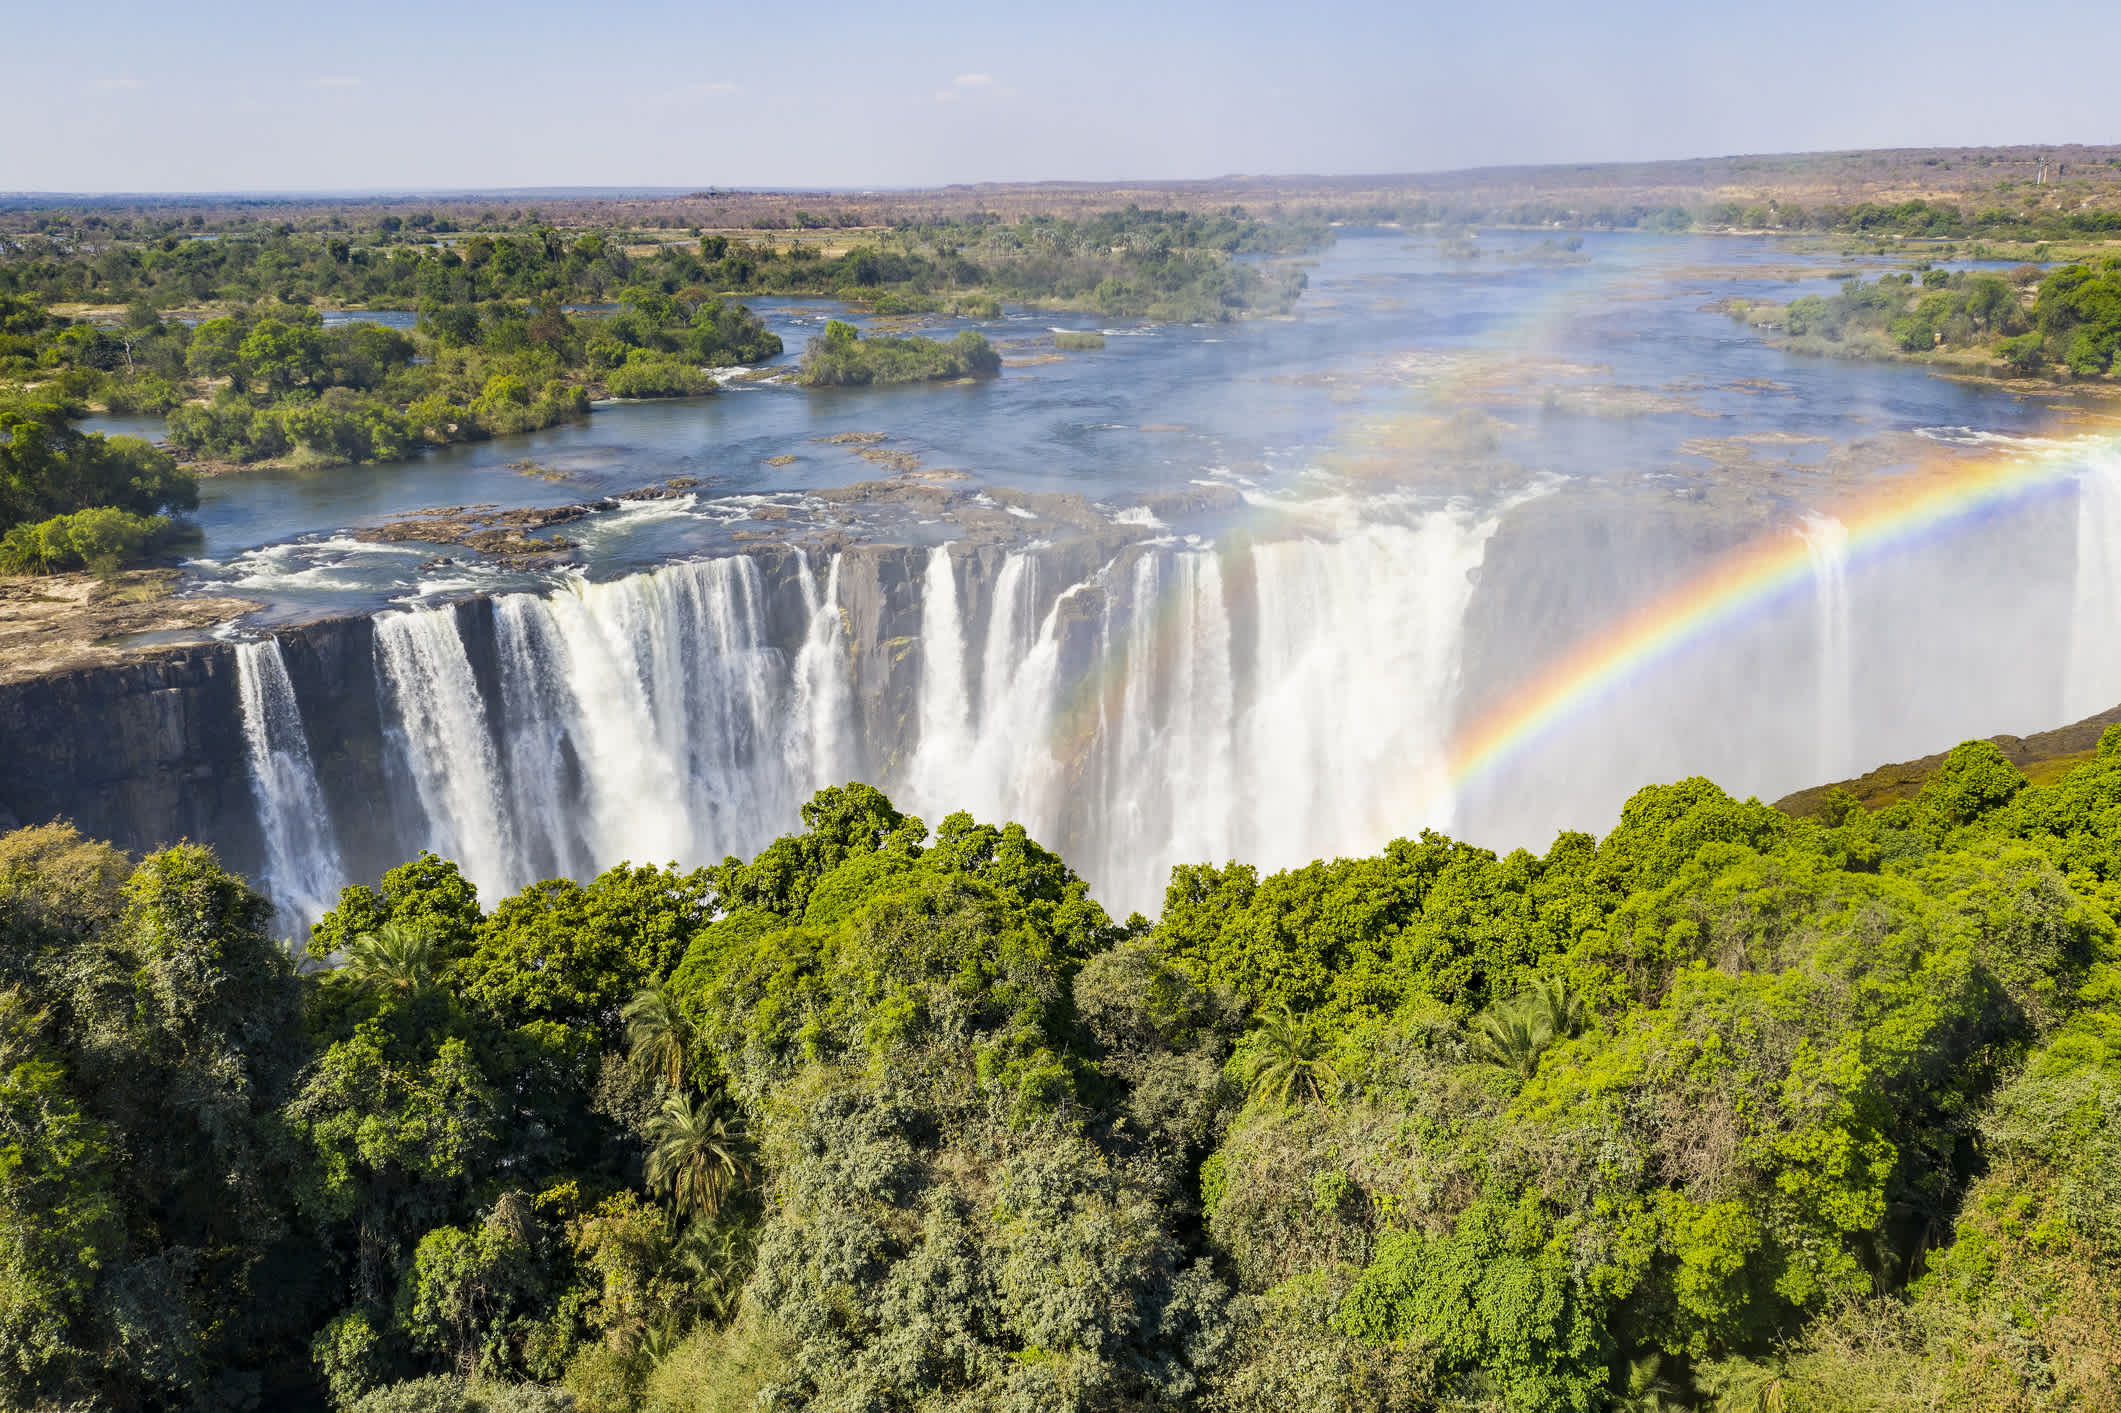 Vue aérienne sur les célèbres chutes Victoria, sur la Zimbabwe et la Zambie